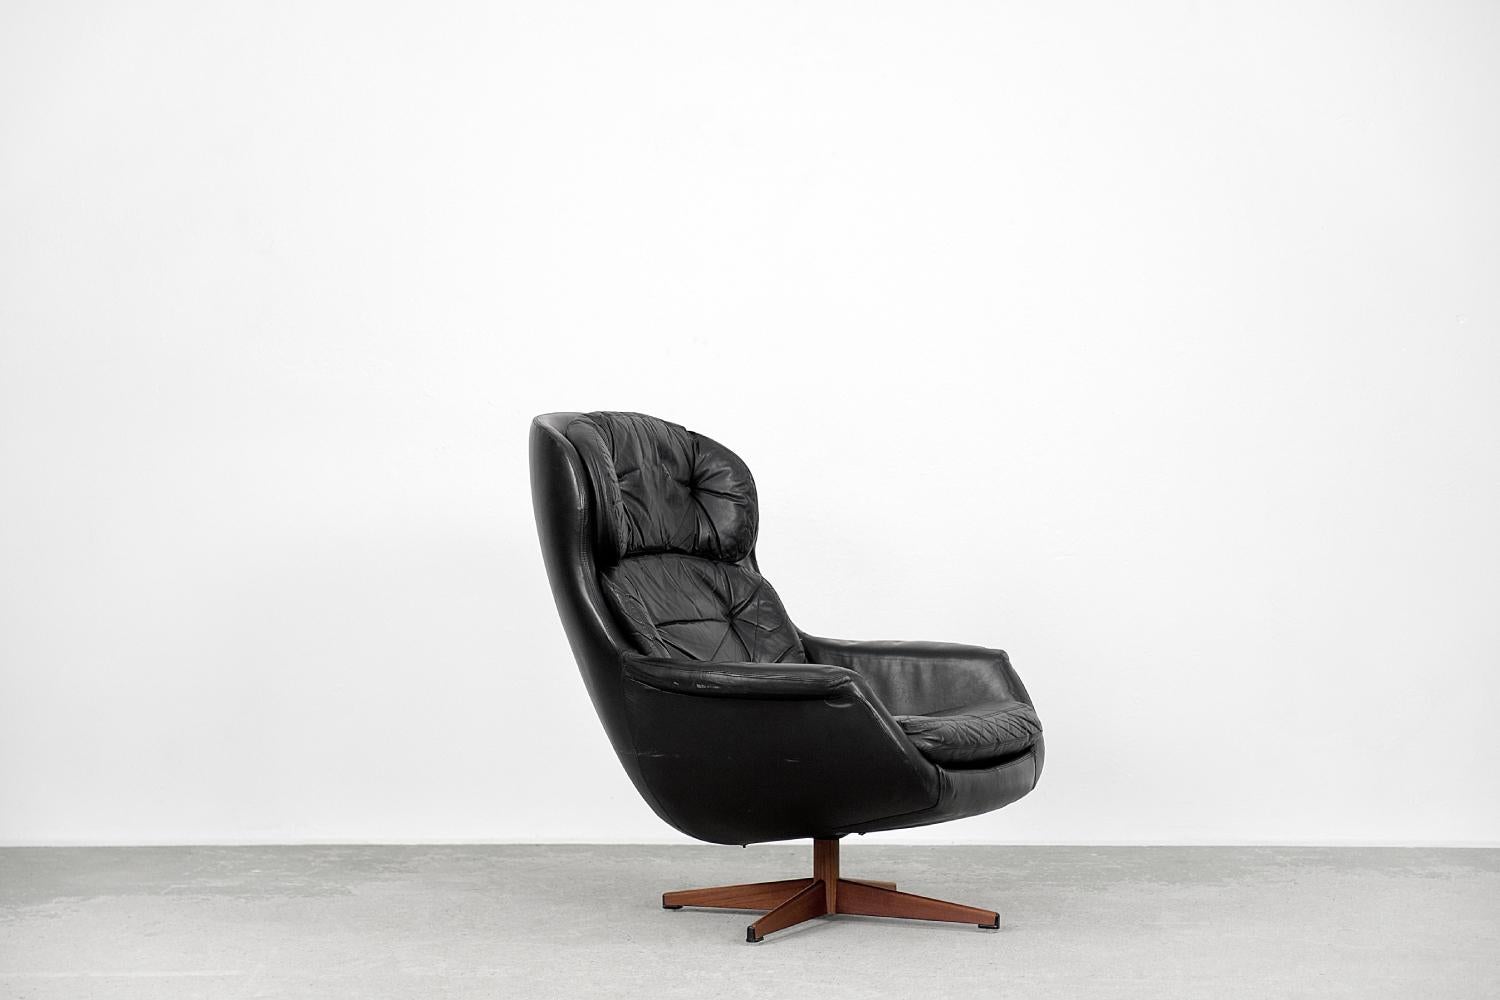 Dieser modernistische Drehsessel wurde in den 1970er Jahren von Selig Imperial in Schweden hergestellt. Der Sessel ist aus schwarzem Naturleder gefertigt. Der Sockel ist ein verchromter sternförmiger Sockel, der mit braunem Furnier überzogen ist.